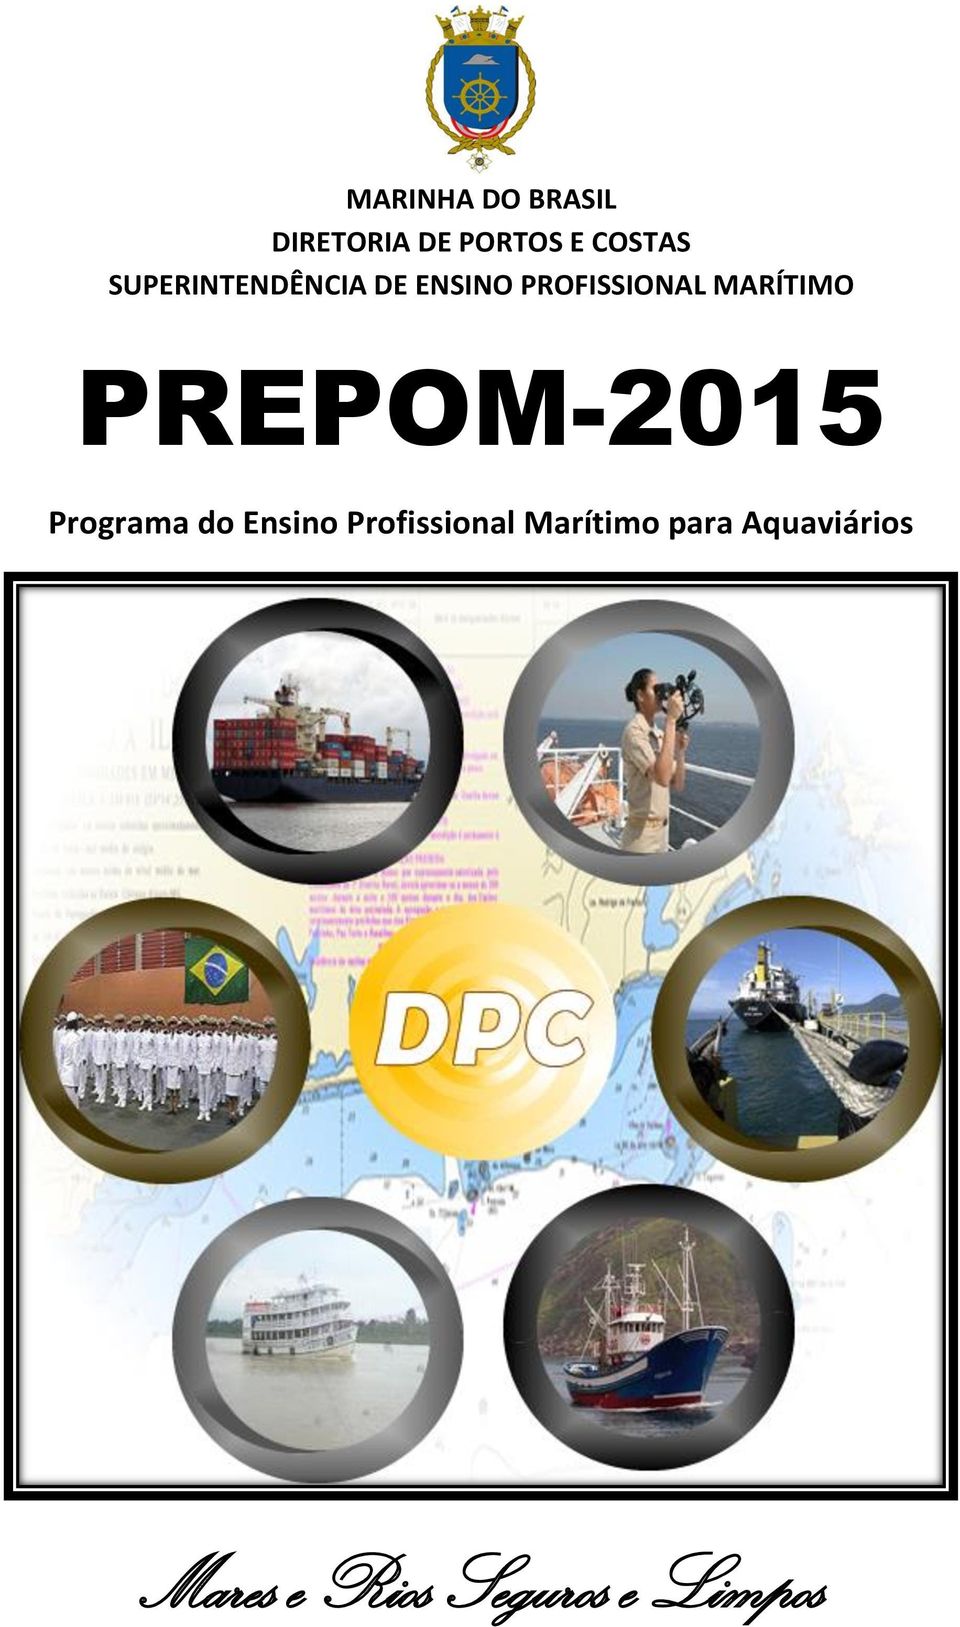 PREPOM-2015 Programa do Ensino Profissional